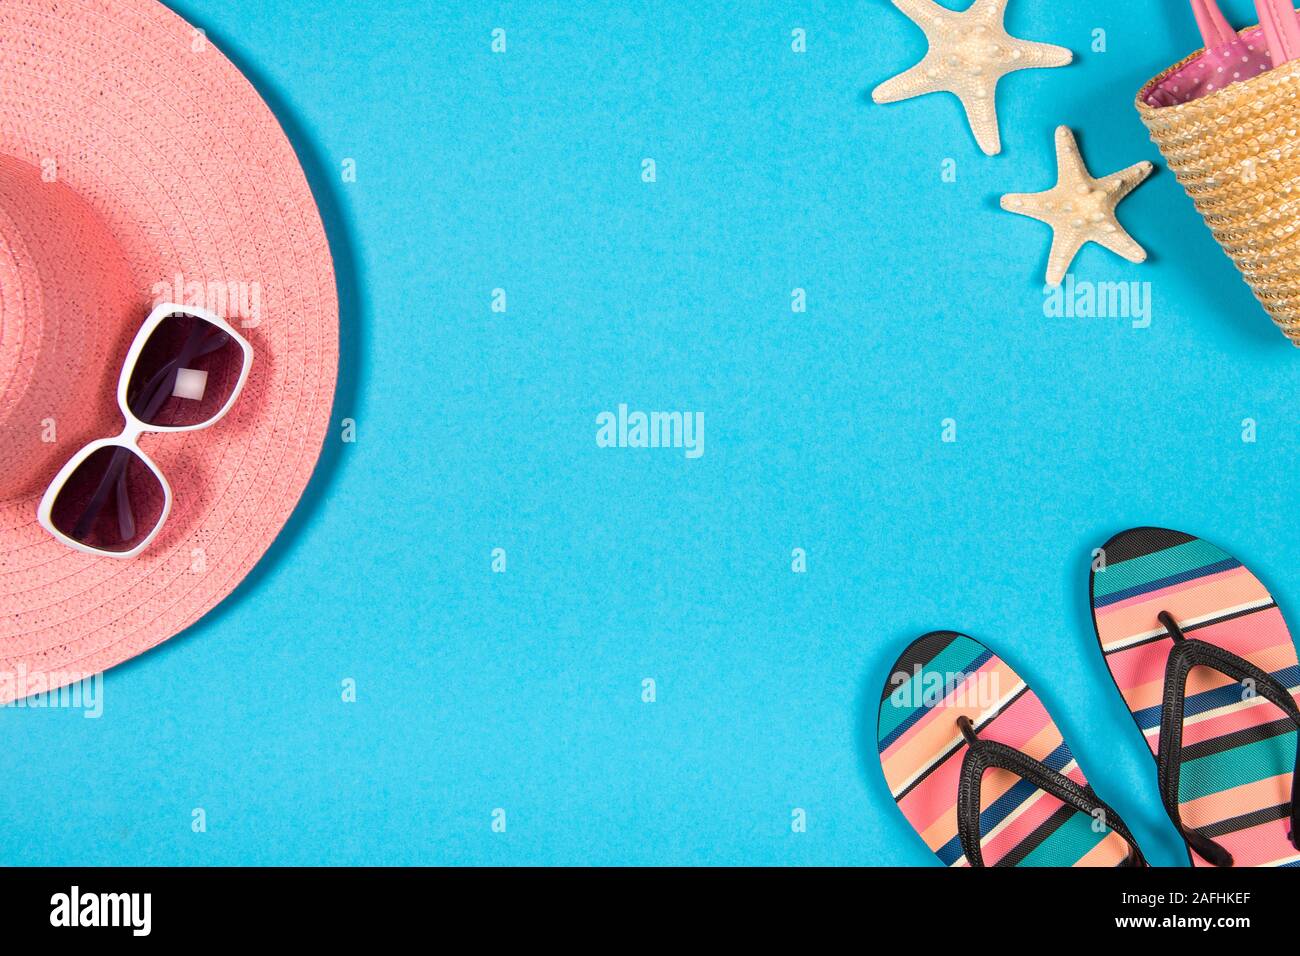 Laici piatta con una vacanza estiva concetto con sfondo blu un cappello rosa, occhiali da sole, flip-flop e spiaggia accessoires visto da un angolo alto Foto Stock